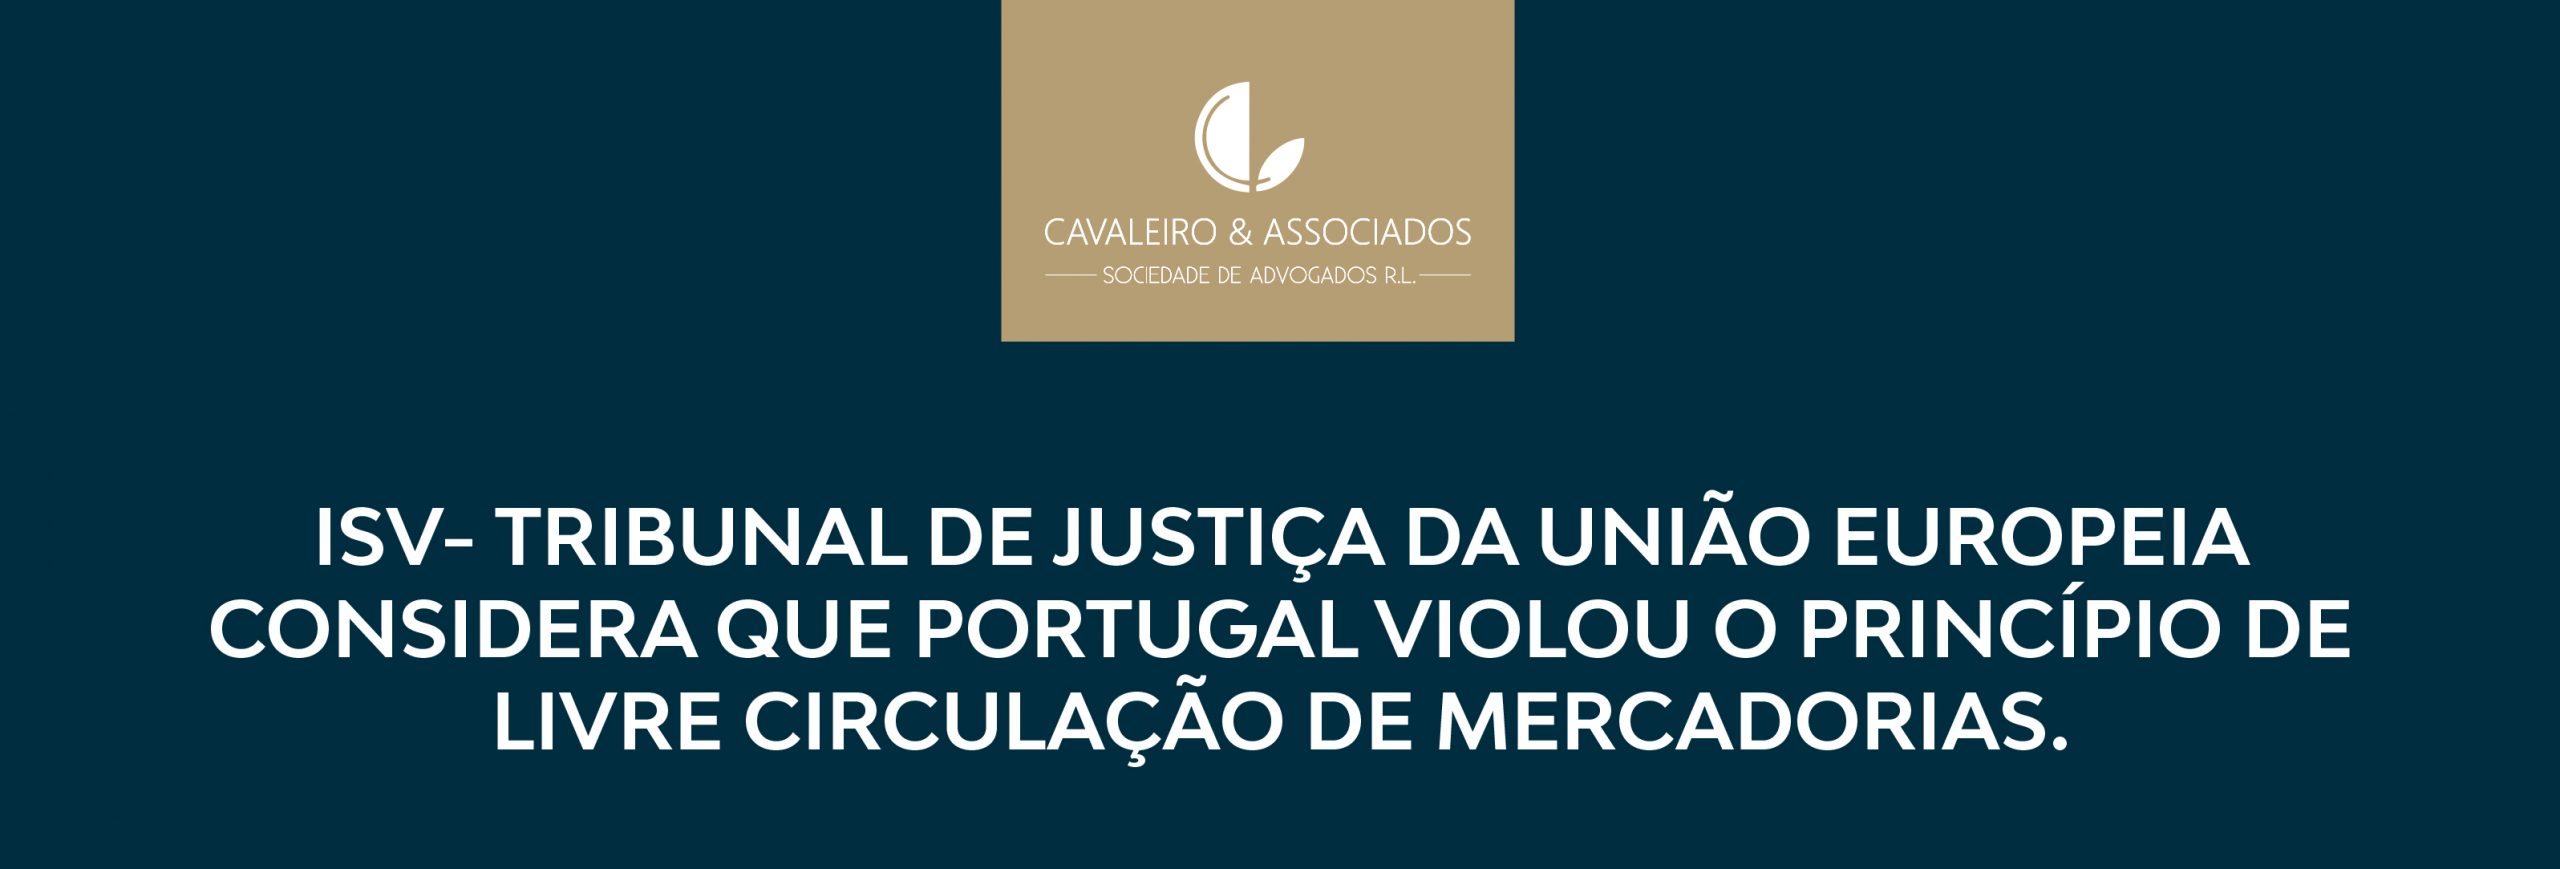 ISV- TRIBUNAL DE JUSTIÇA DA UNIÃO EUROPEIA CONSIDERA QUE PORTUGAL VIOLOU O PRINCÍPIO DE LIVRE CIRCULAÇÃO DE MERCADORIAS